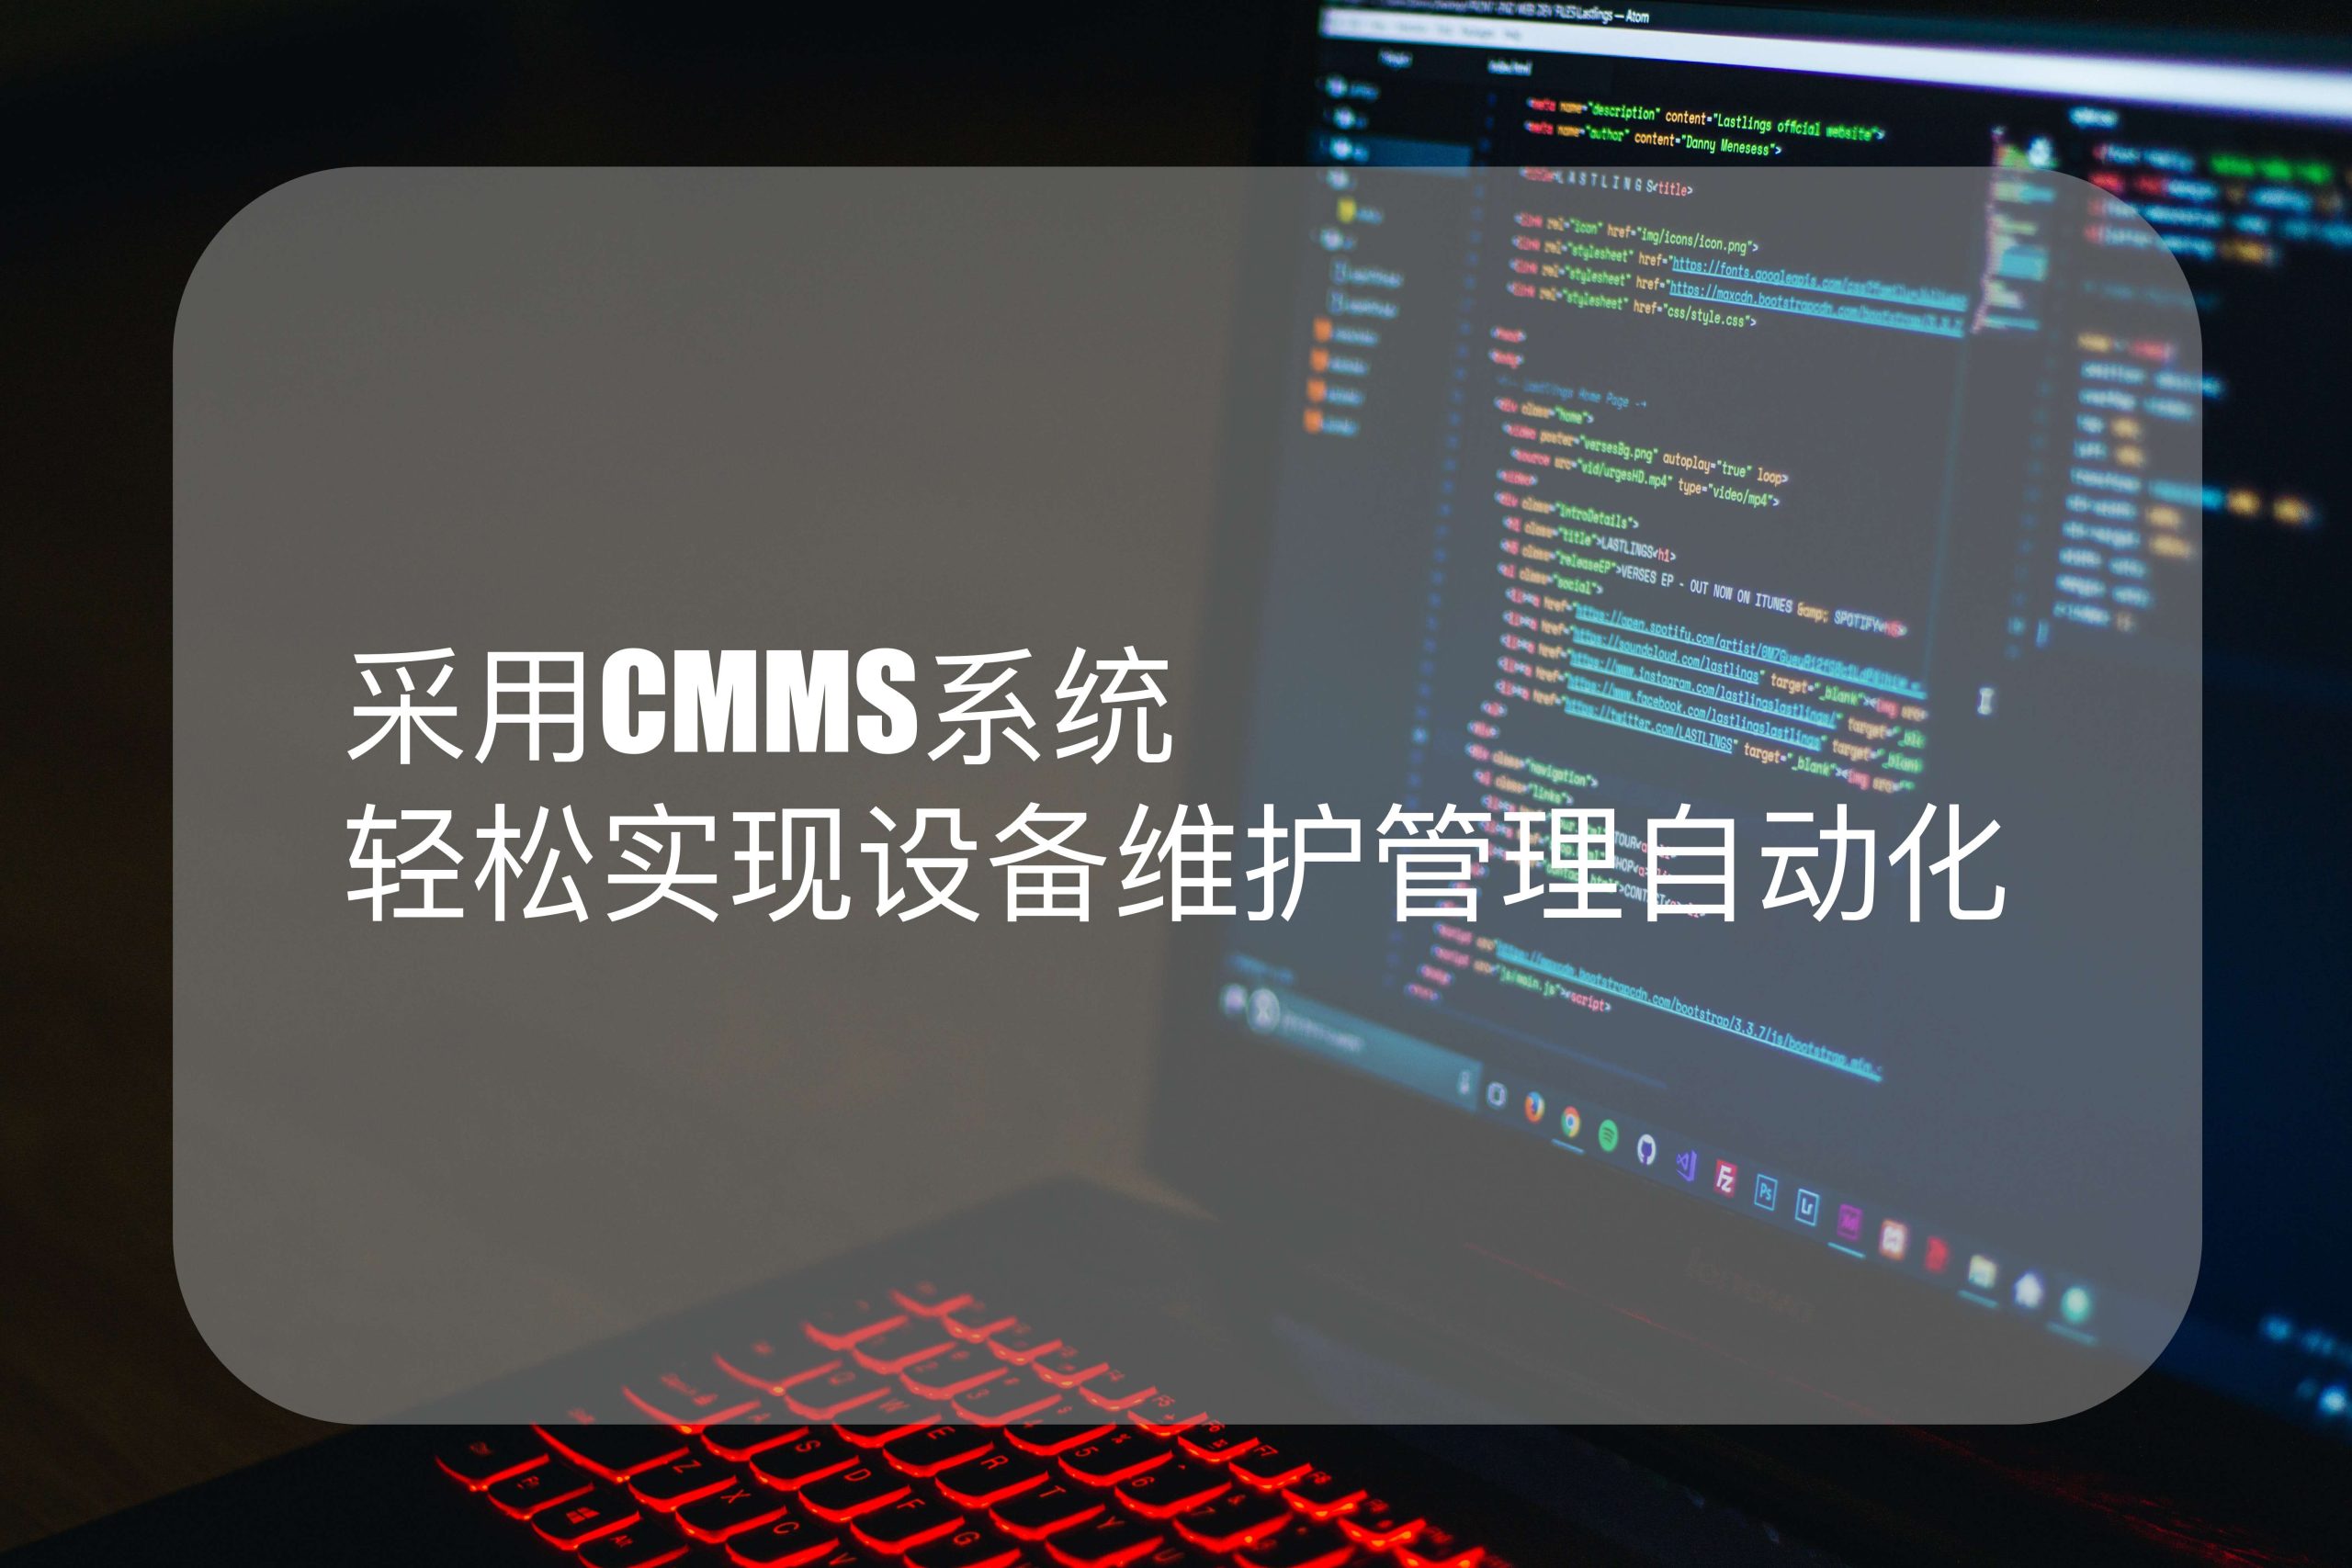 采用CMMS系统轻松实现设备维护管理自动化